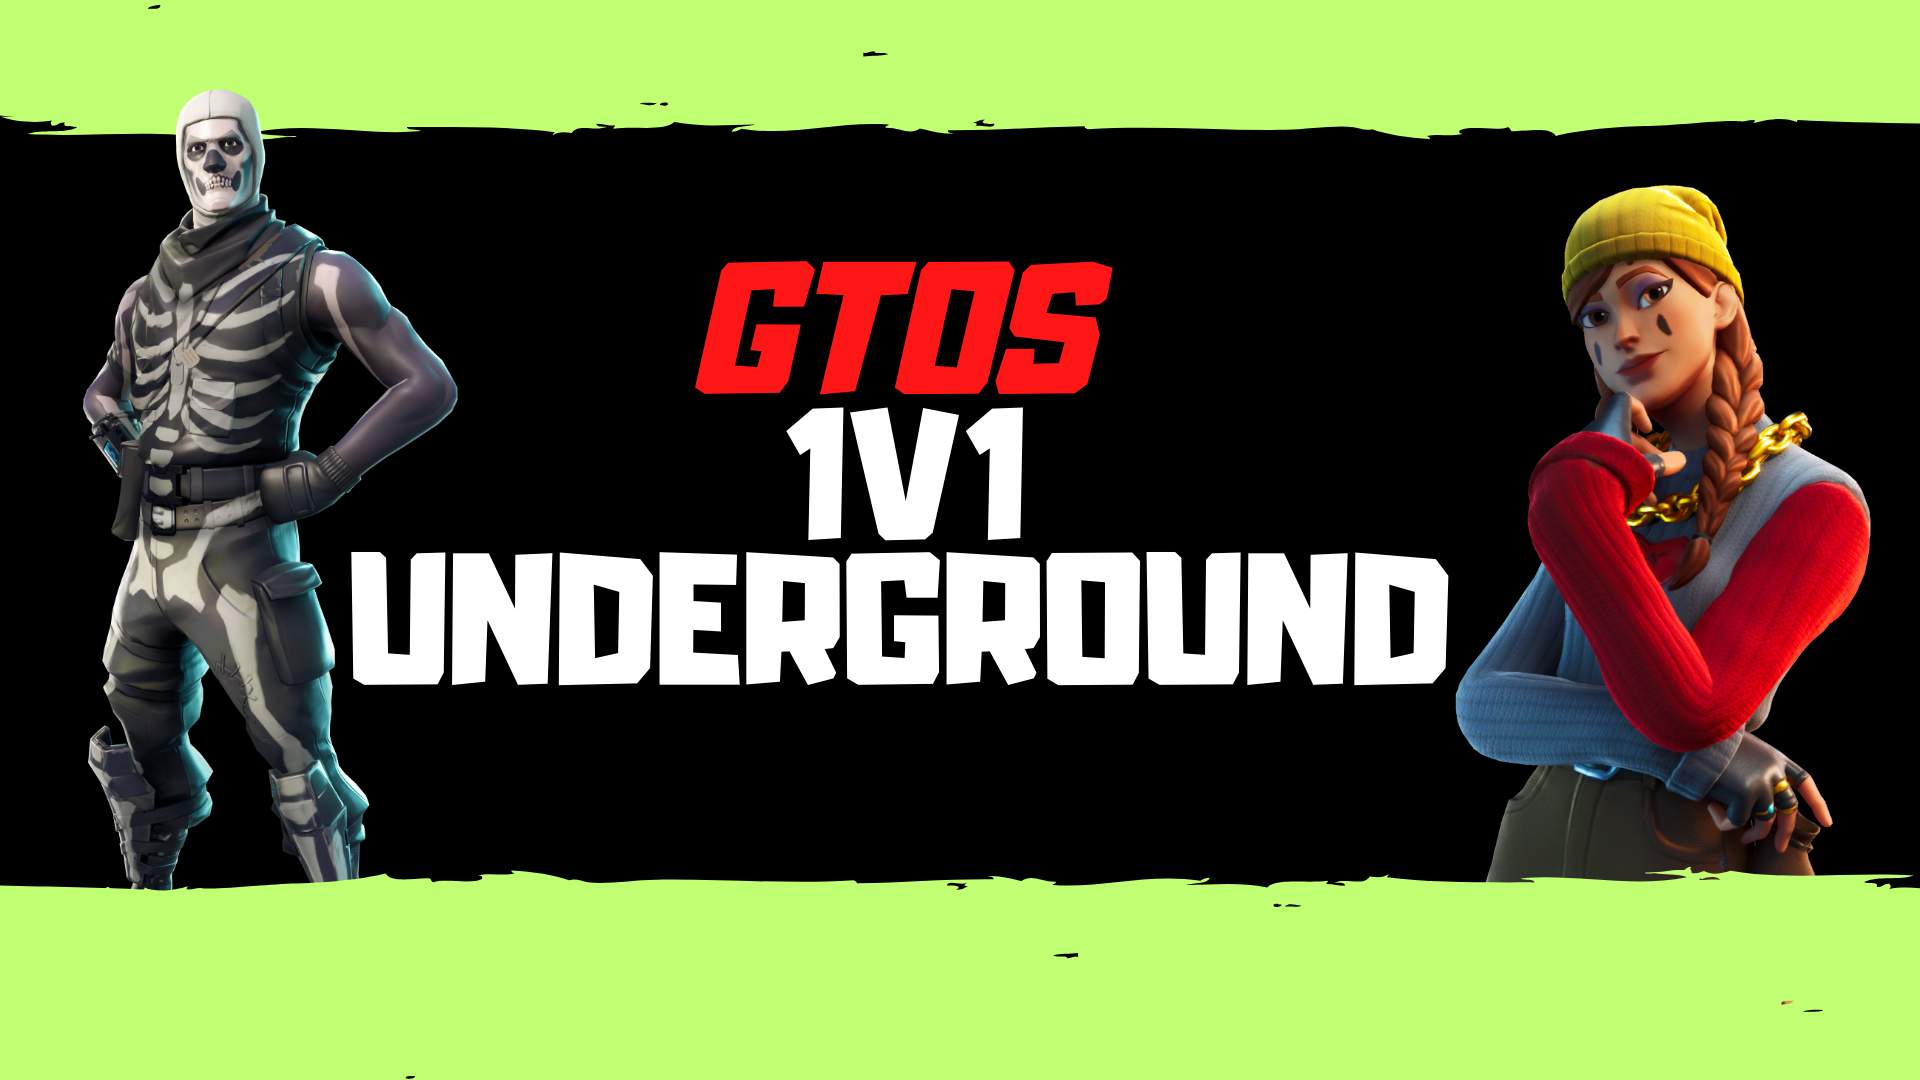 GTOS 1V1 UNDERGROUND